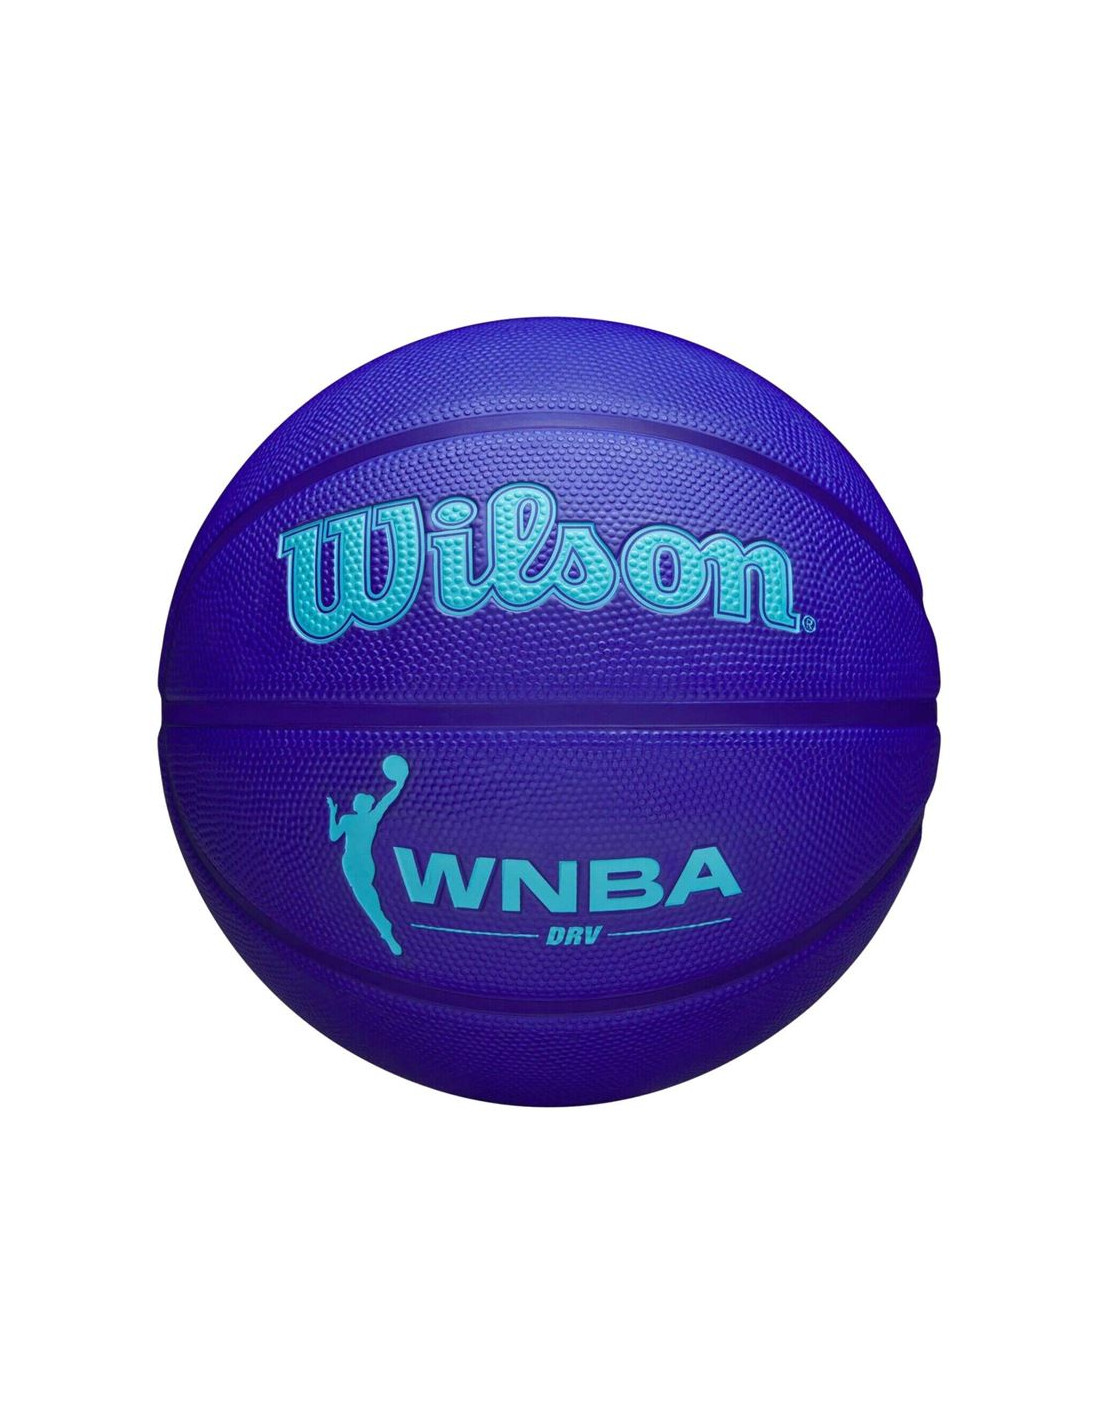 Pelota de Baloncesto Wilson Wnba Drv Azul